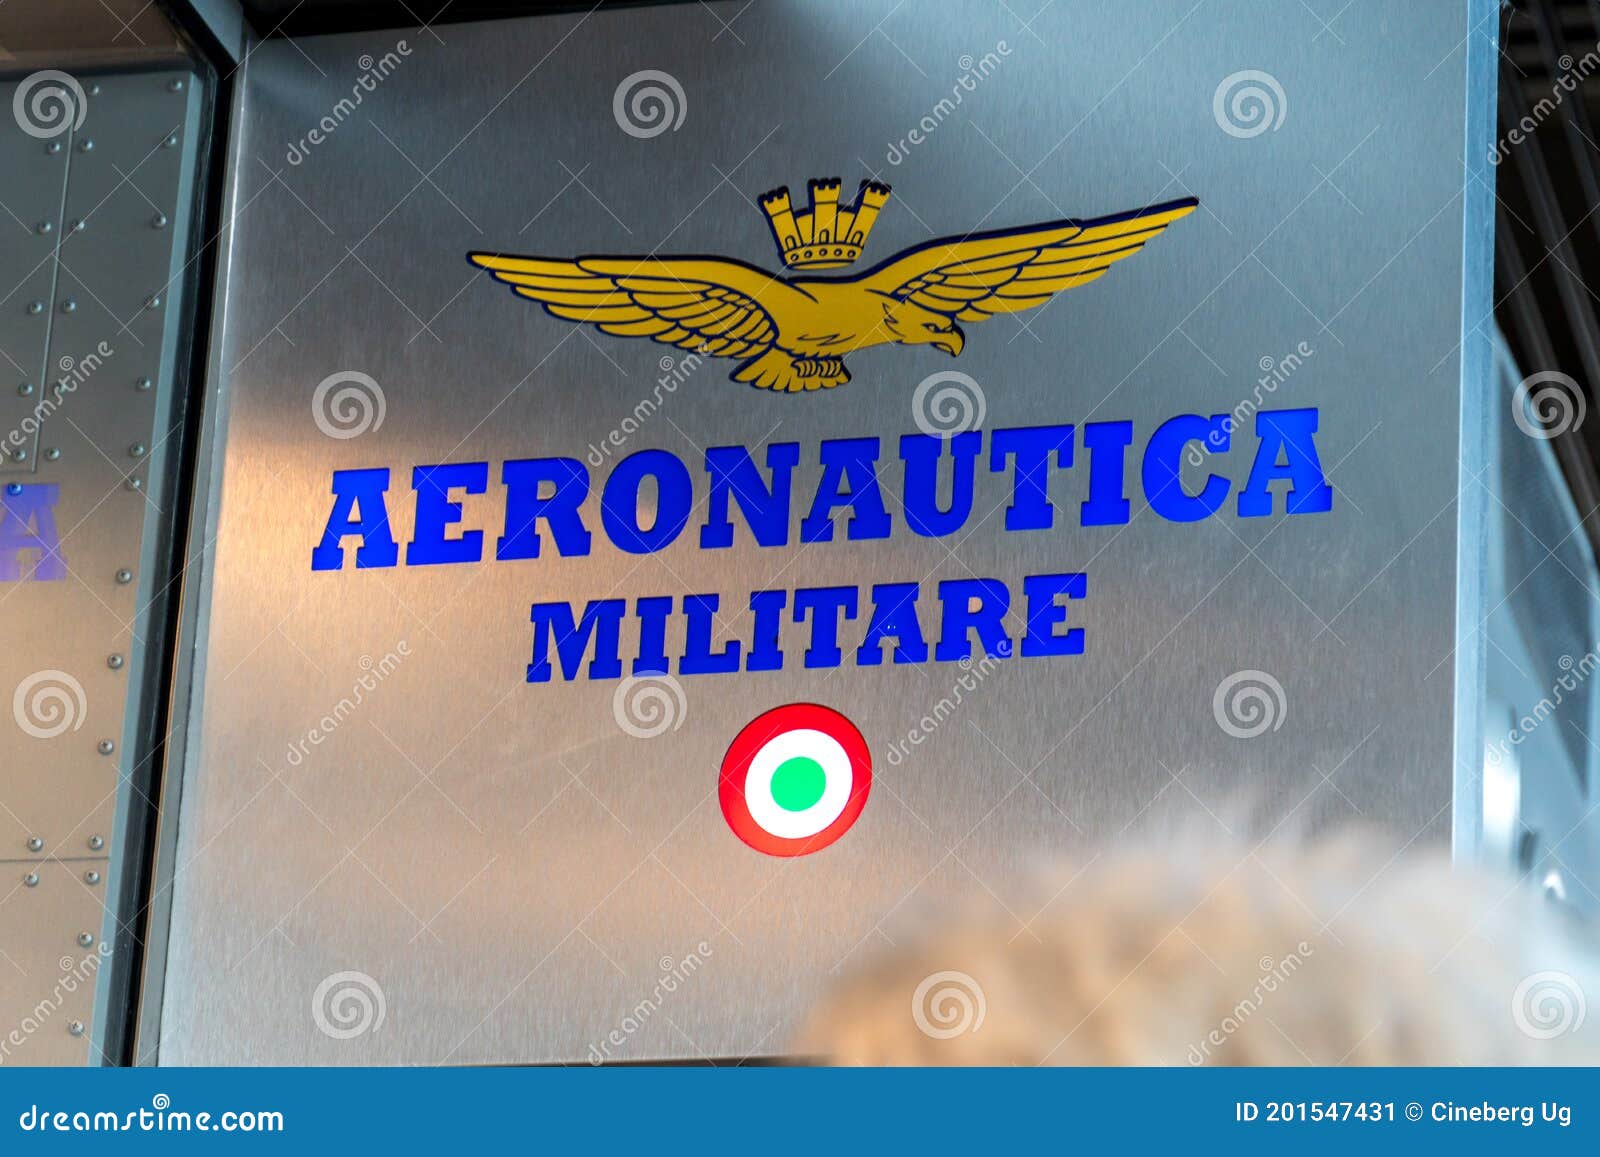 Militare Italiano De Aeronáutica De La Marca De Ropa De Caballero editorial - Imagen de editorial, divisa: